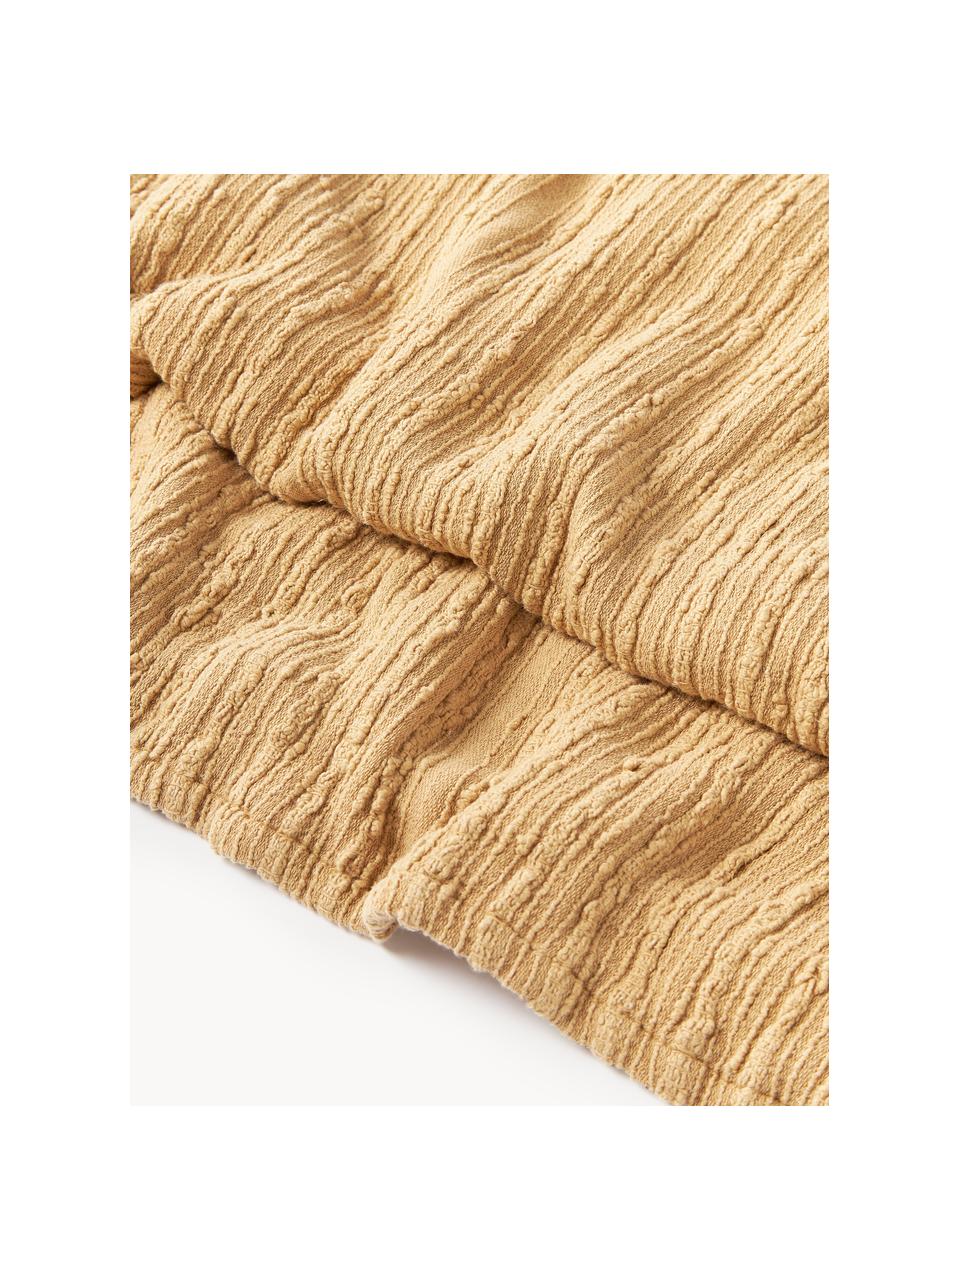 Couvre-lit en bouclette Thomassin, Tissu bouclette (95 % coton, 5 % polyester)

La bouclette est une matière qui se caractérise par sa texture aux courbes irrégulières. La surface caractéristique est créée par des boucles tissées de fils différents qui confèrent au tissu une structure unique. La structure bouclée a un effet à la fois isolant et moelleux, ce qui rend le tissu particulièrement douillet

Le matériau est certifié STANDARD 100 OEKO-TEX®, 4265CIT, CITEVE, Jaune moutarde, larg. 230 x long. 260 cm (pour lits jusqu'à 180 x 200 cm)